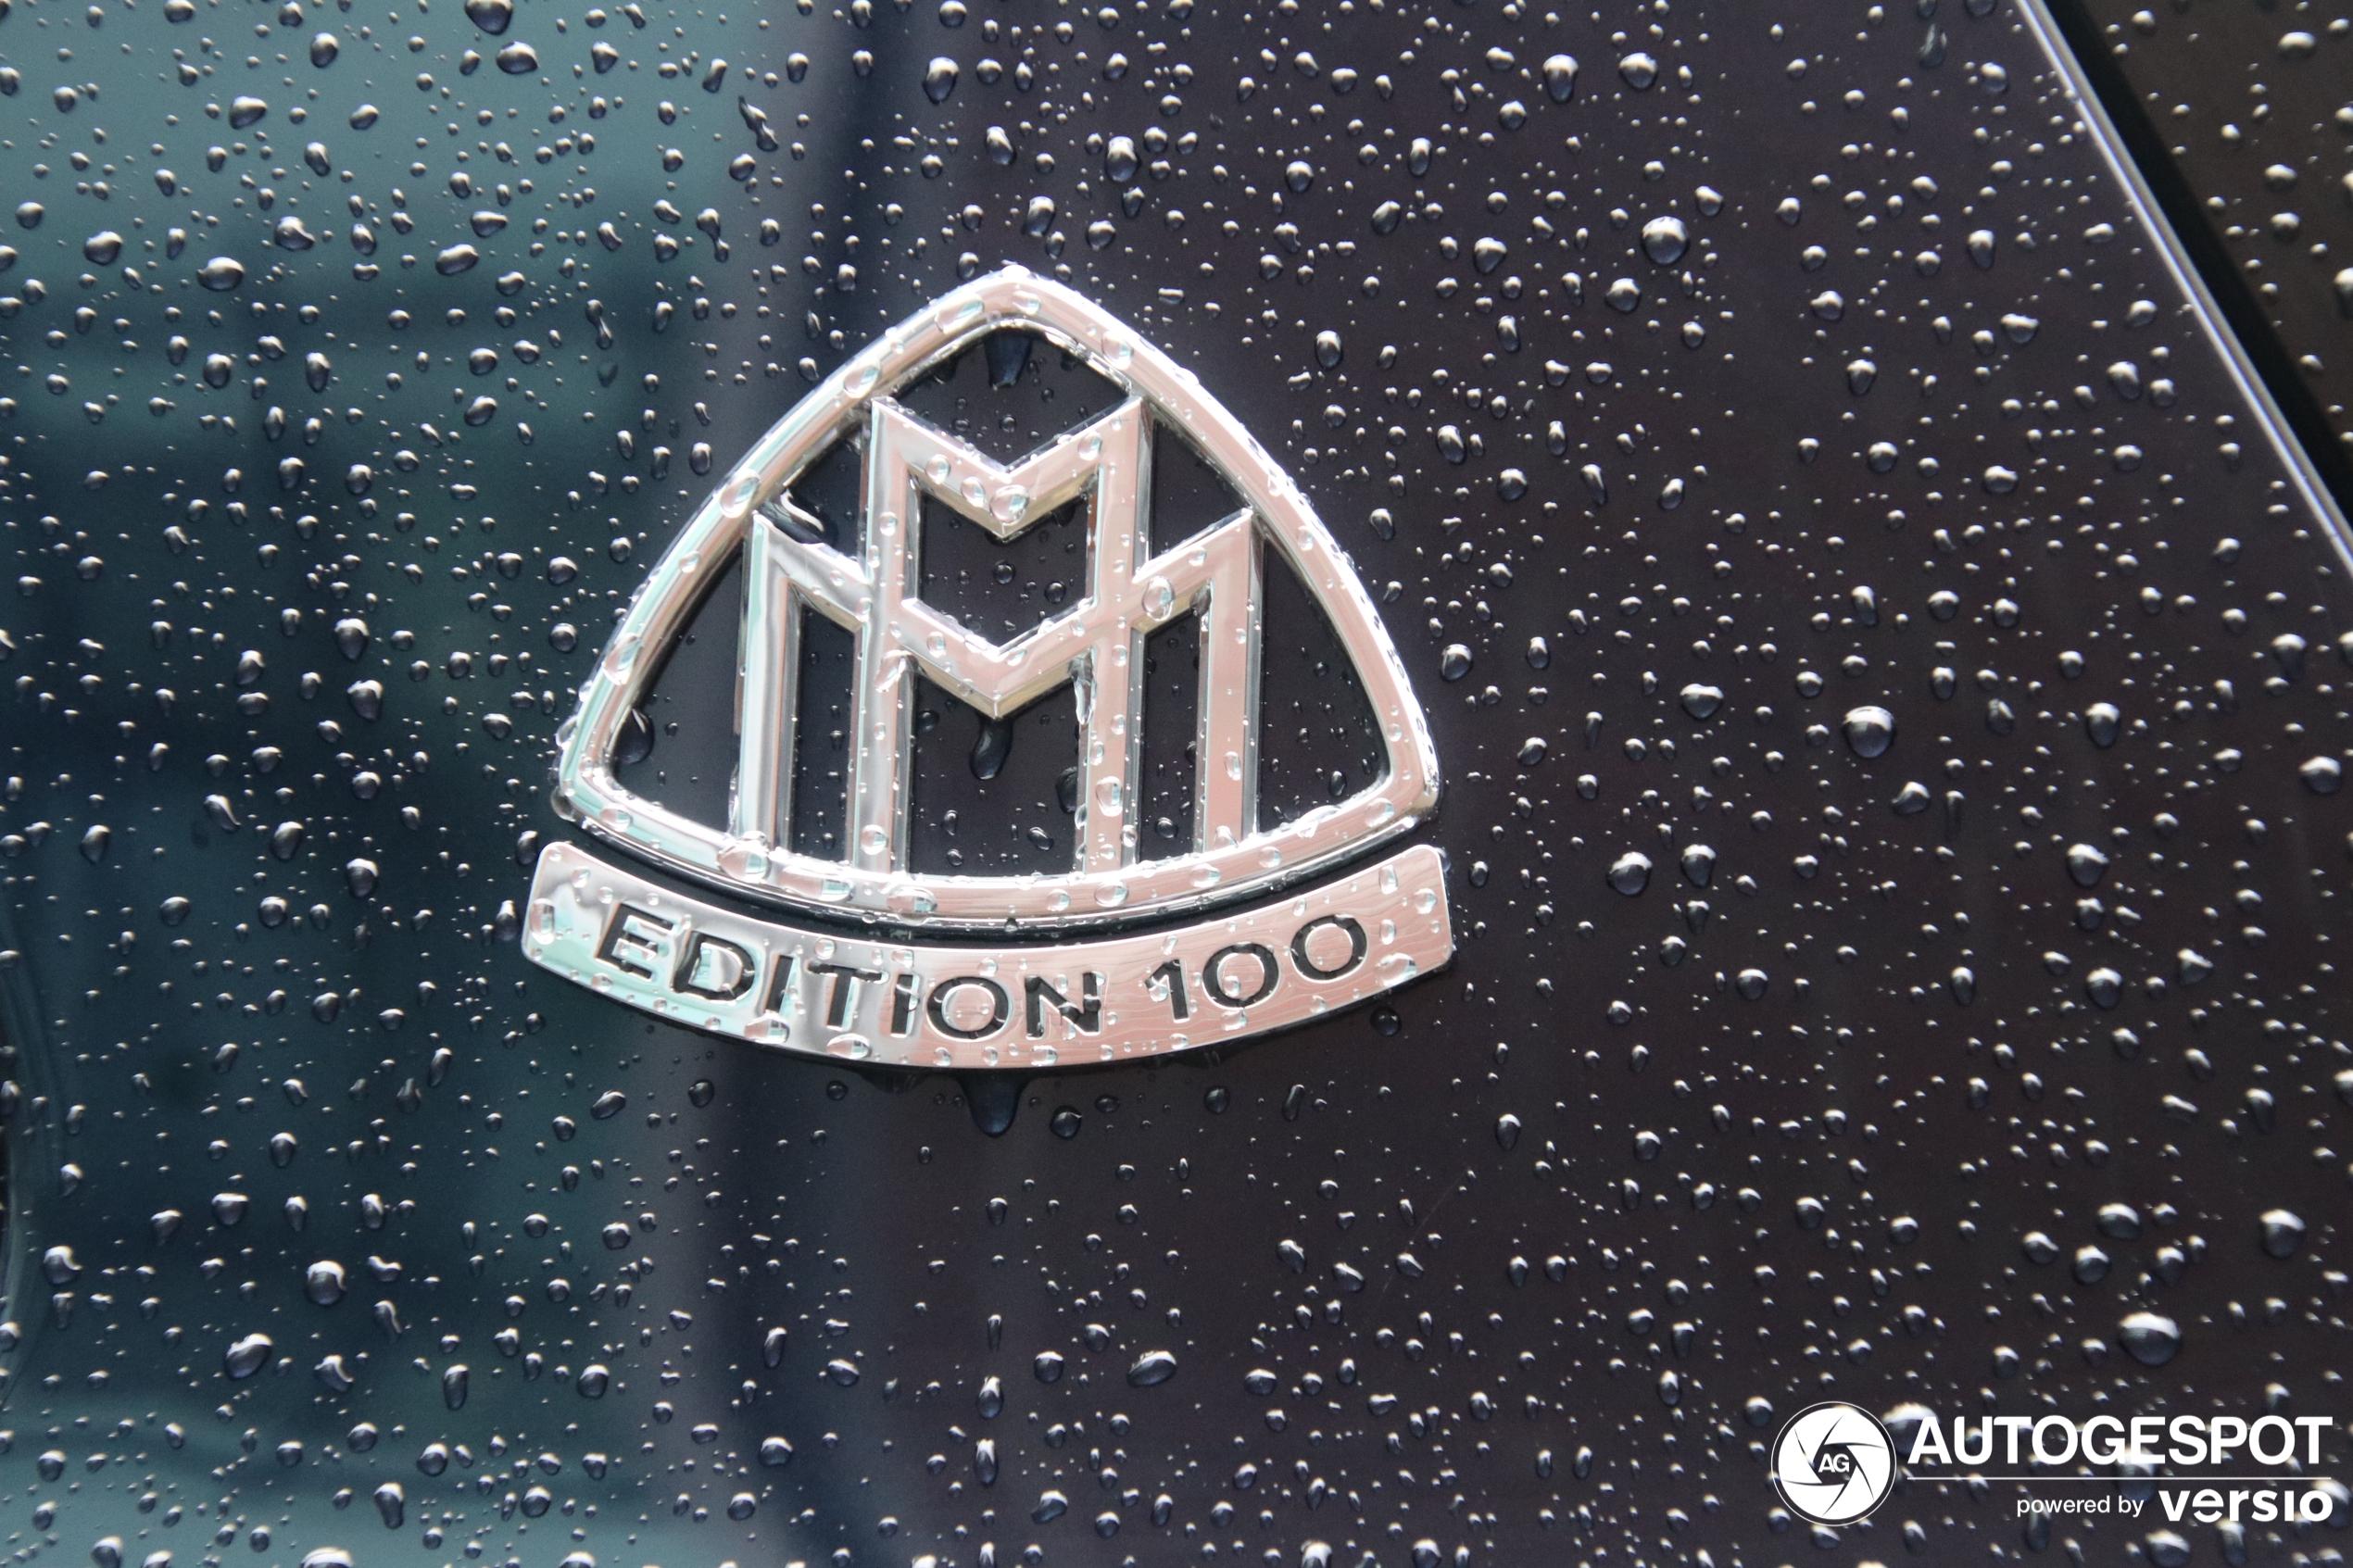 Mercedes-Maybach GLS 600 Edition 100